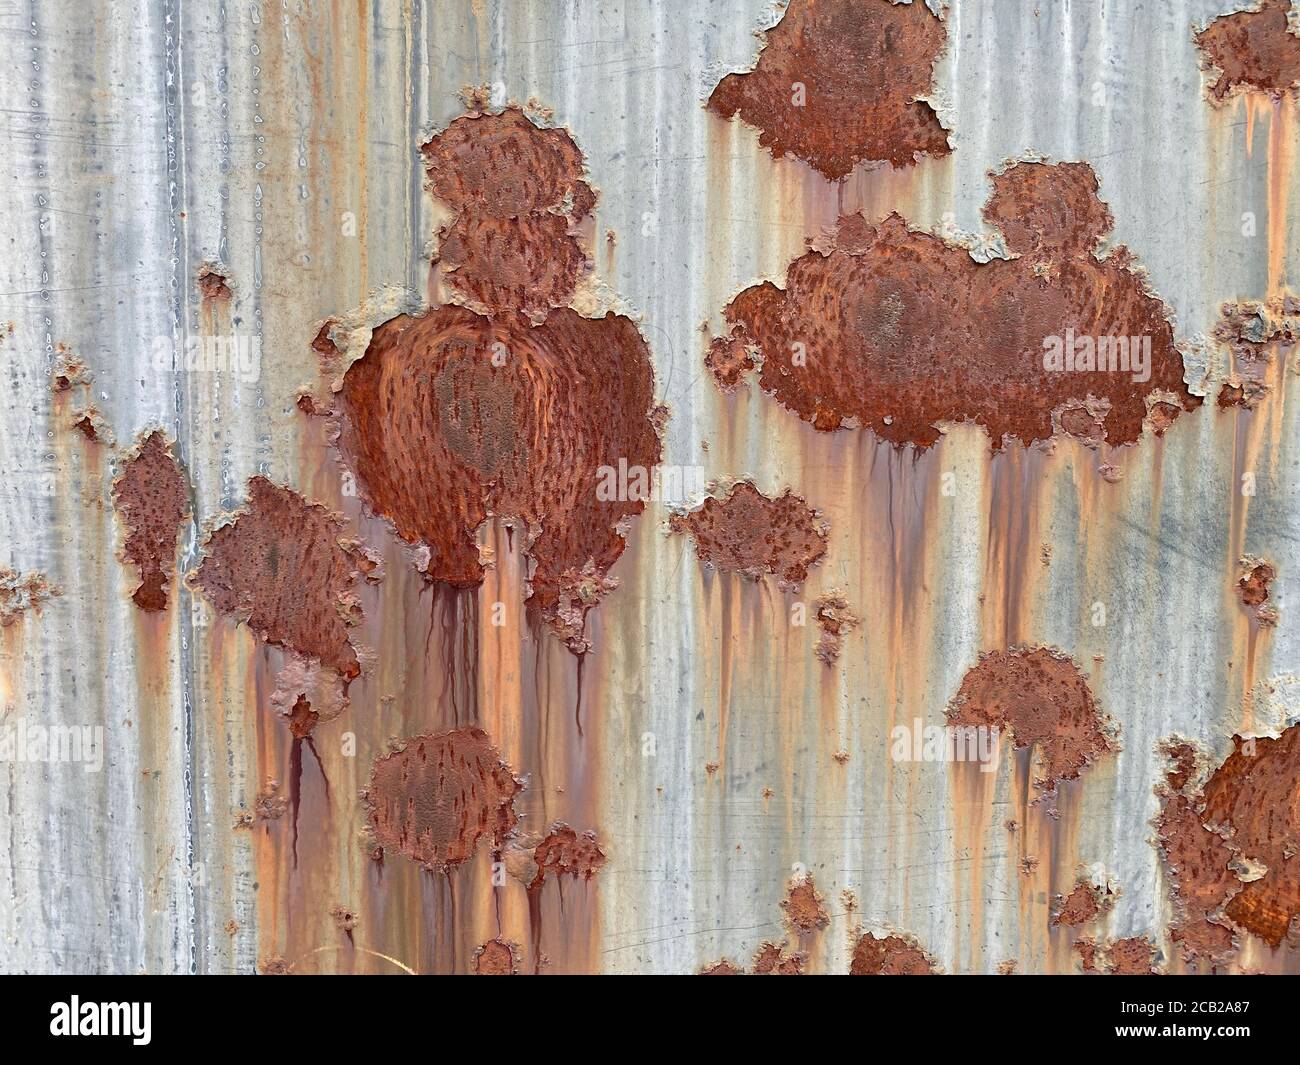 Revestimiento de chapa metálica de aluminio corrugado con incrustaciones de  color oxidado Fotografía de stock - Alamy